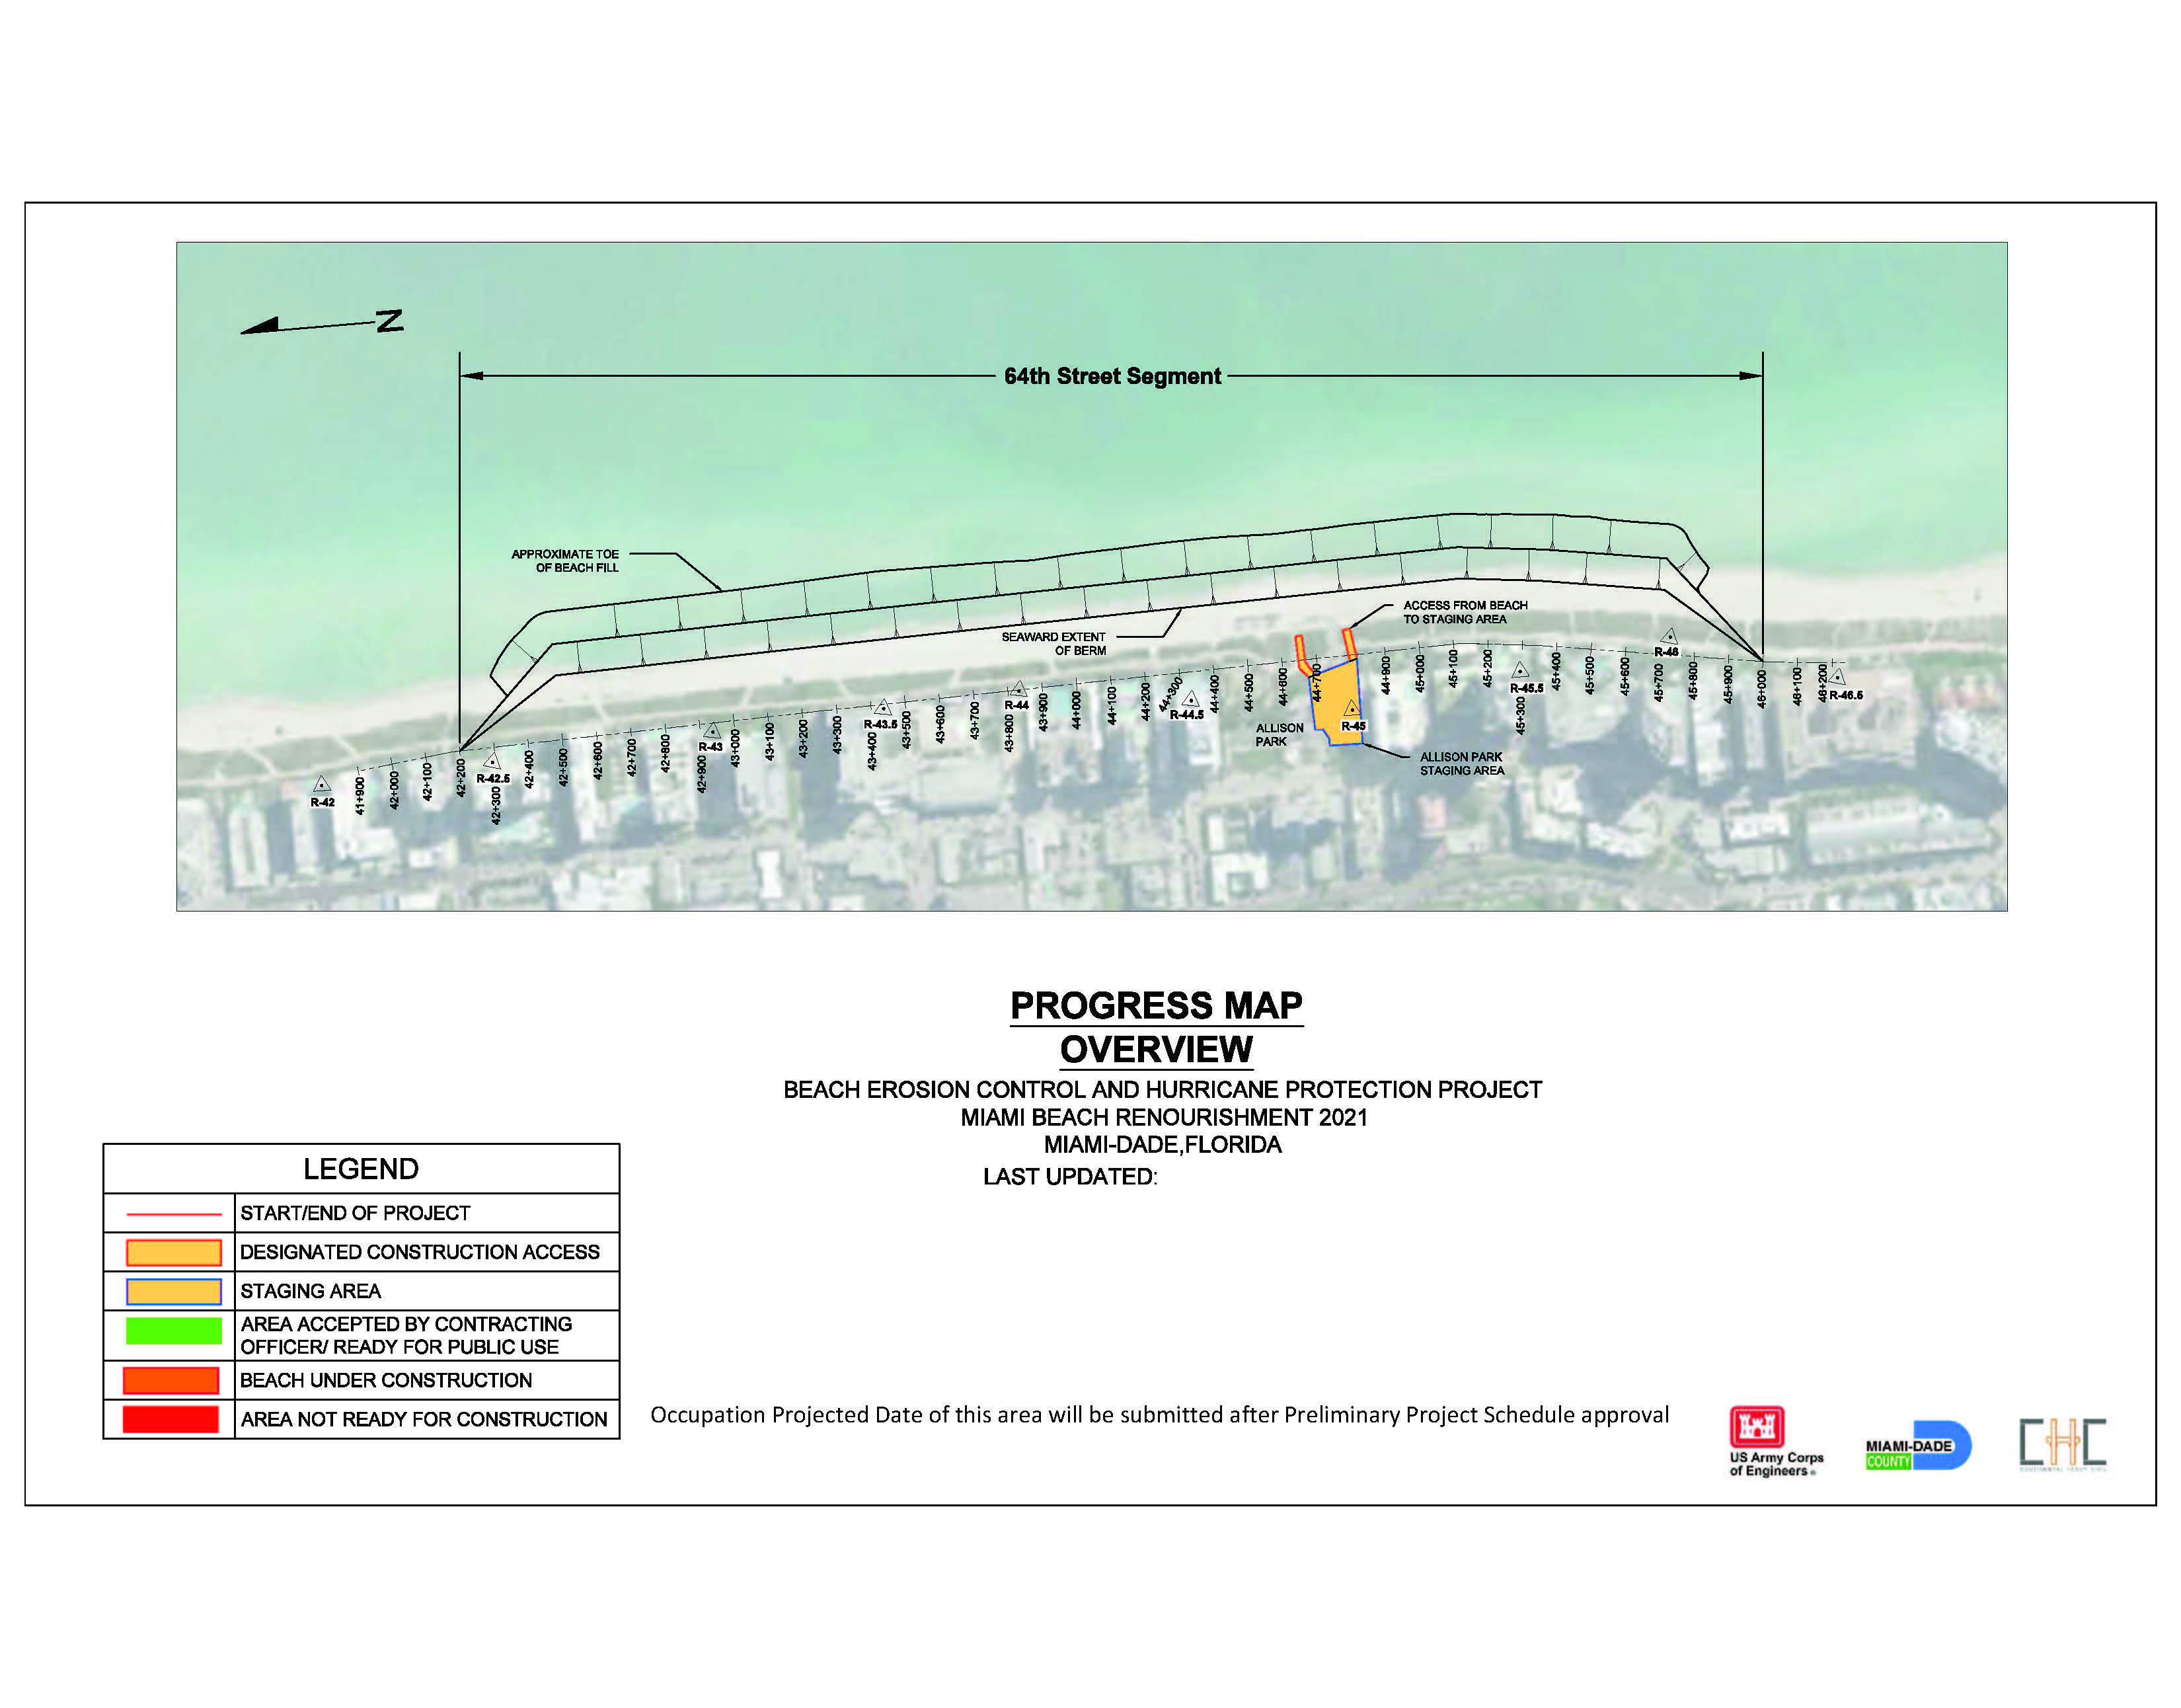 Map showing the 2021 Miami Beach Renourishment Project 64th Street Segment